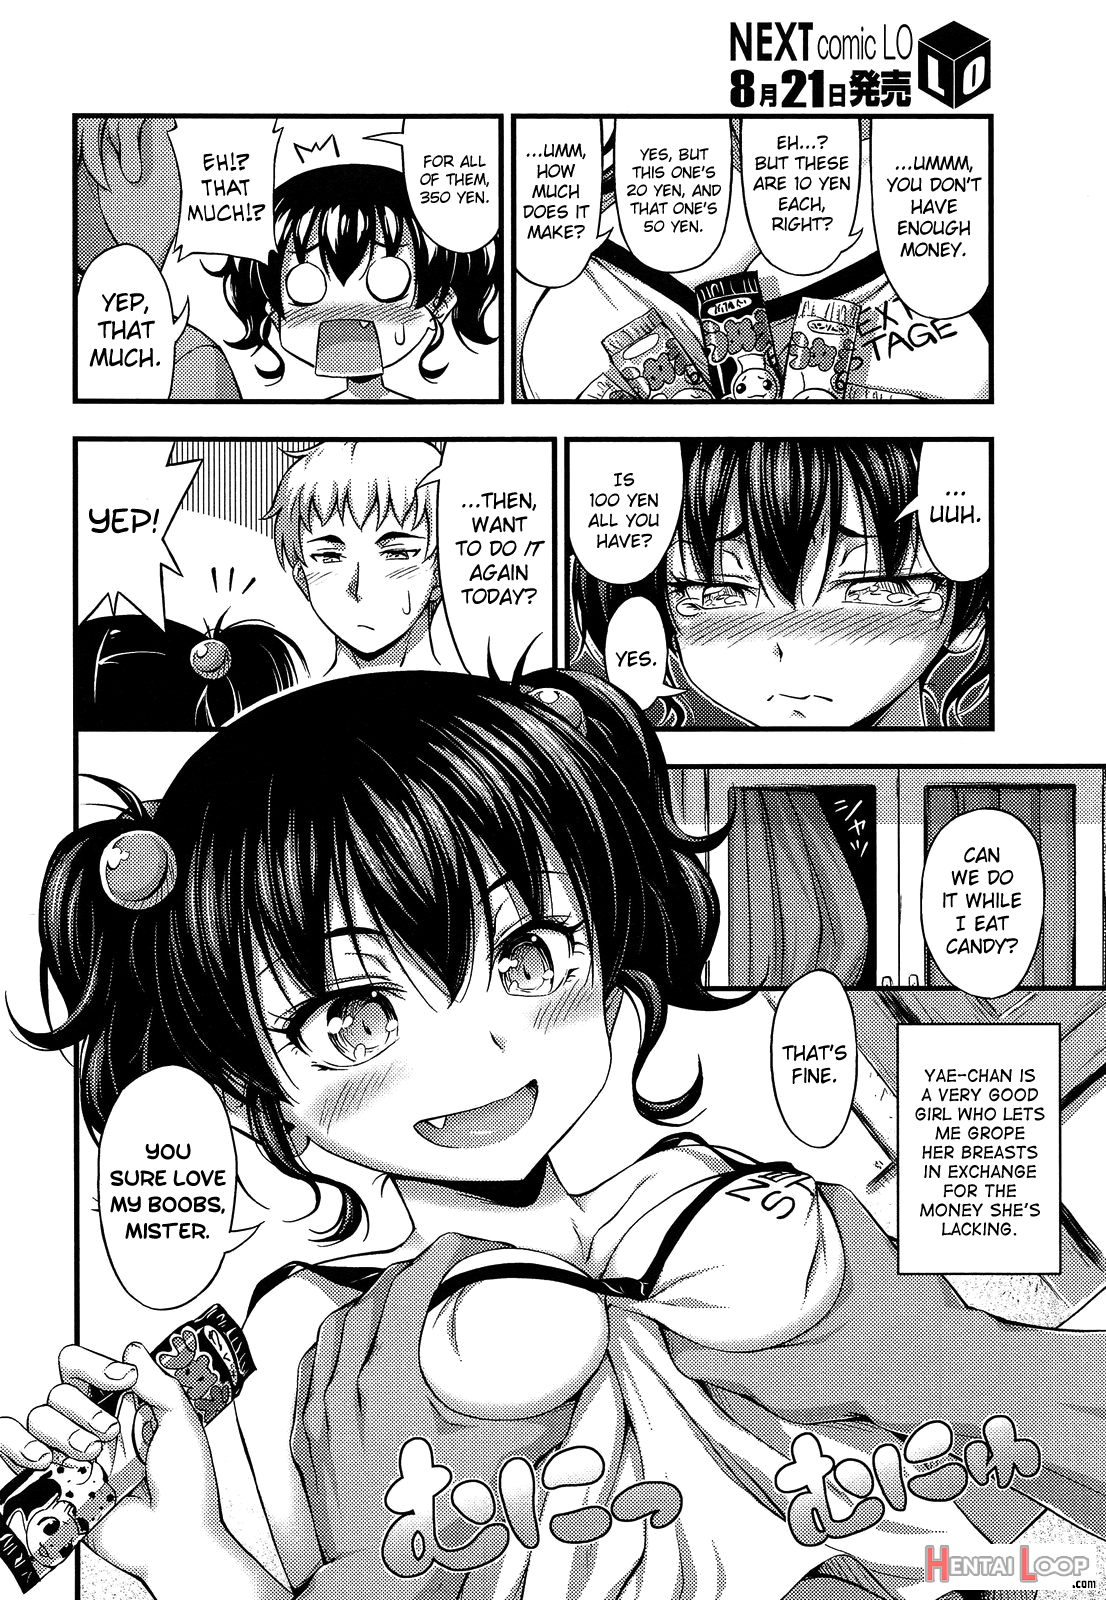 Okashina Ko page 2